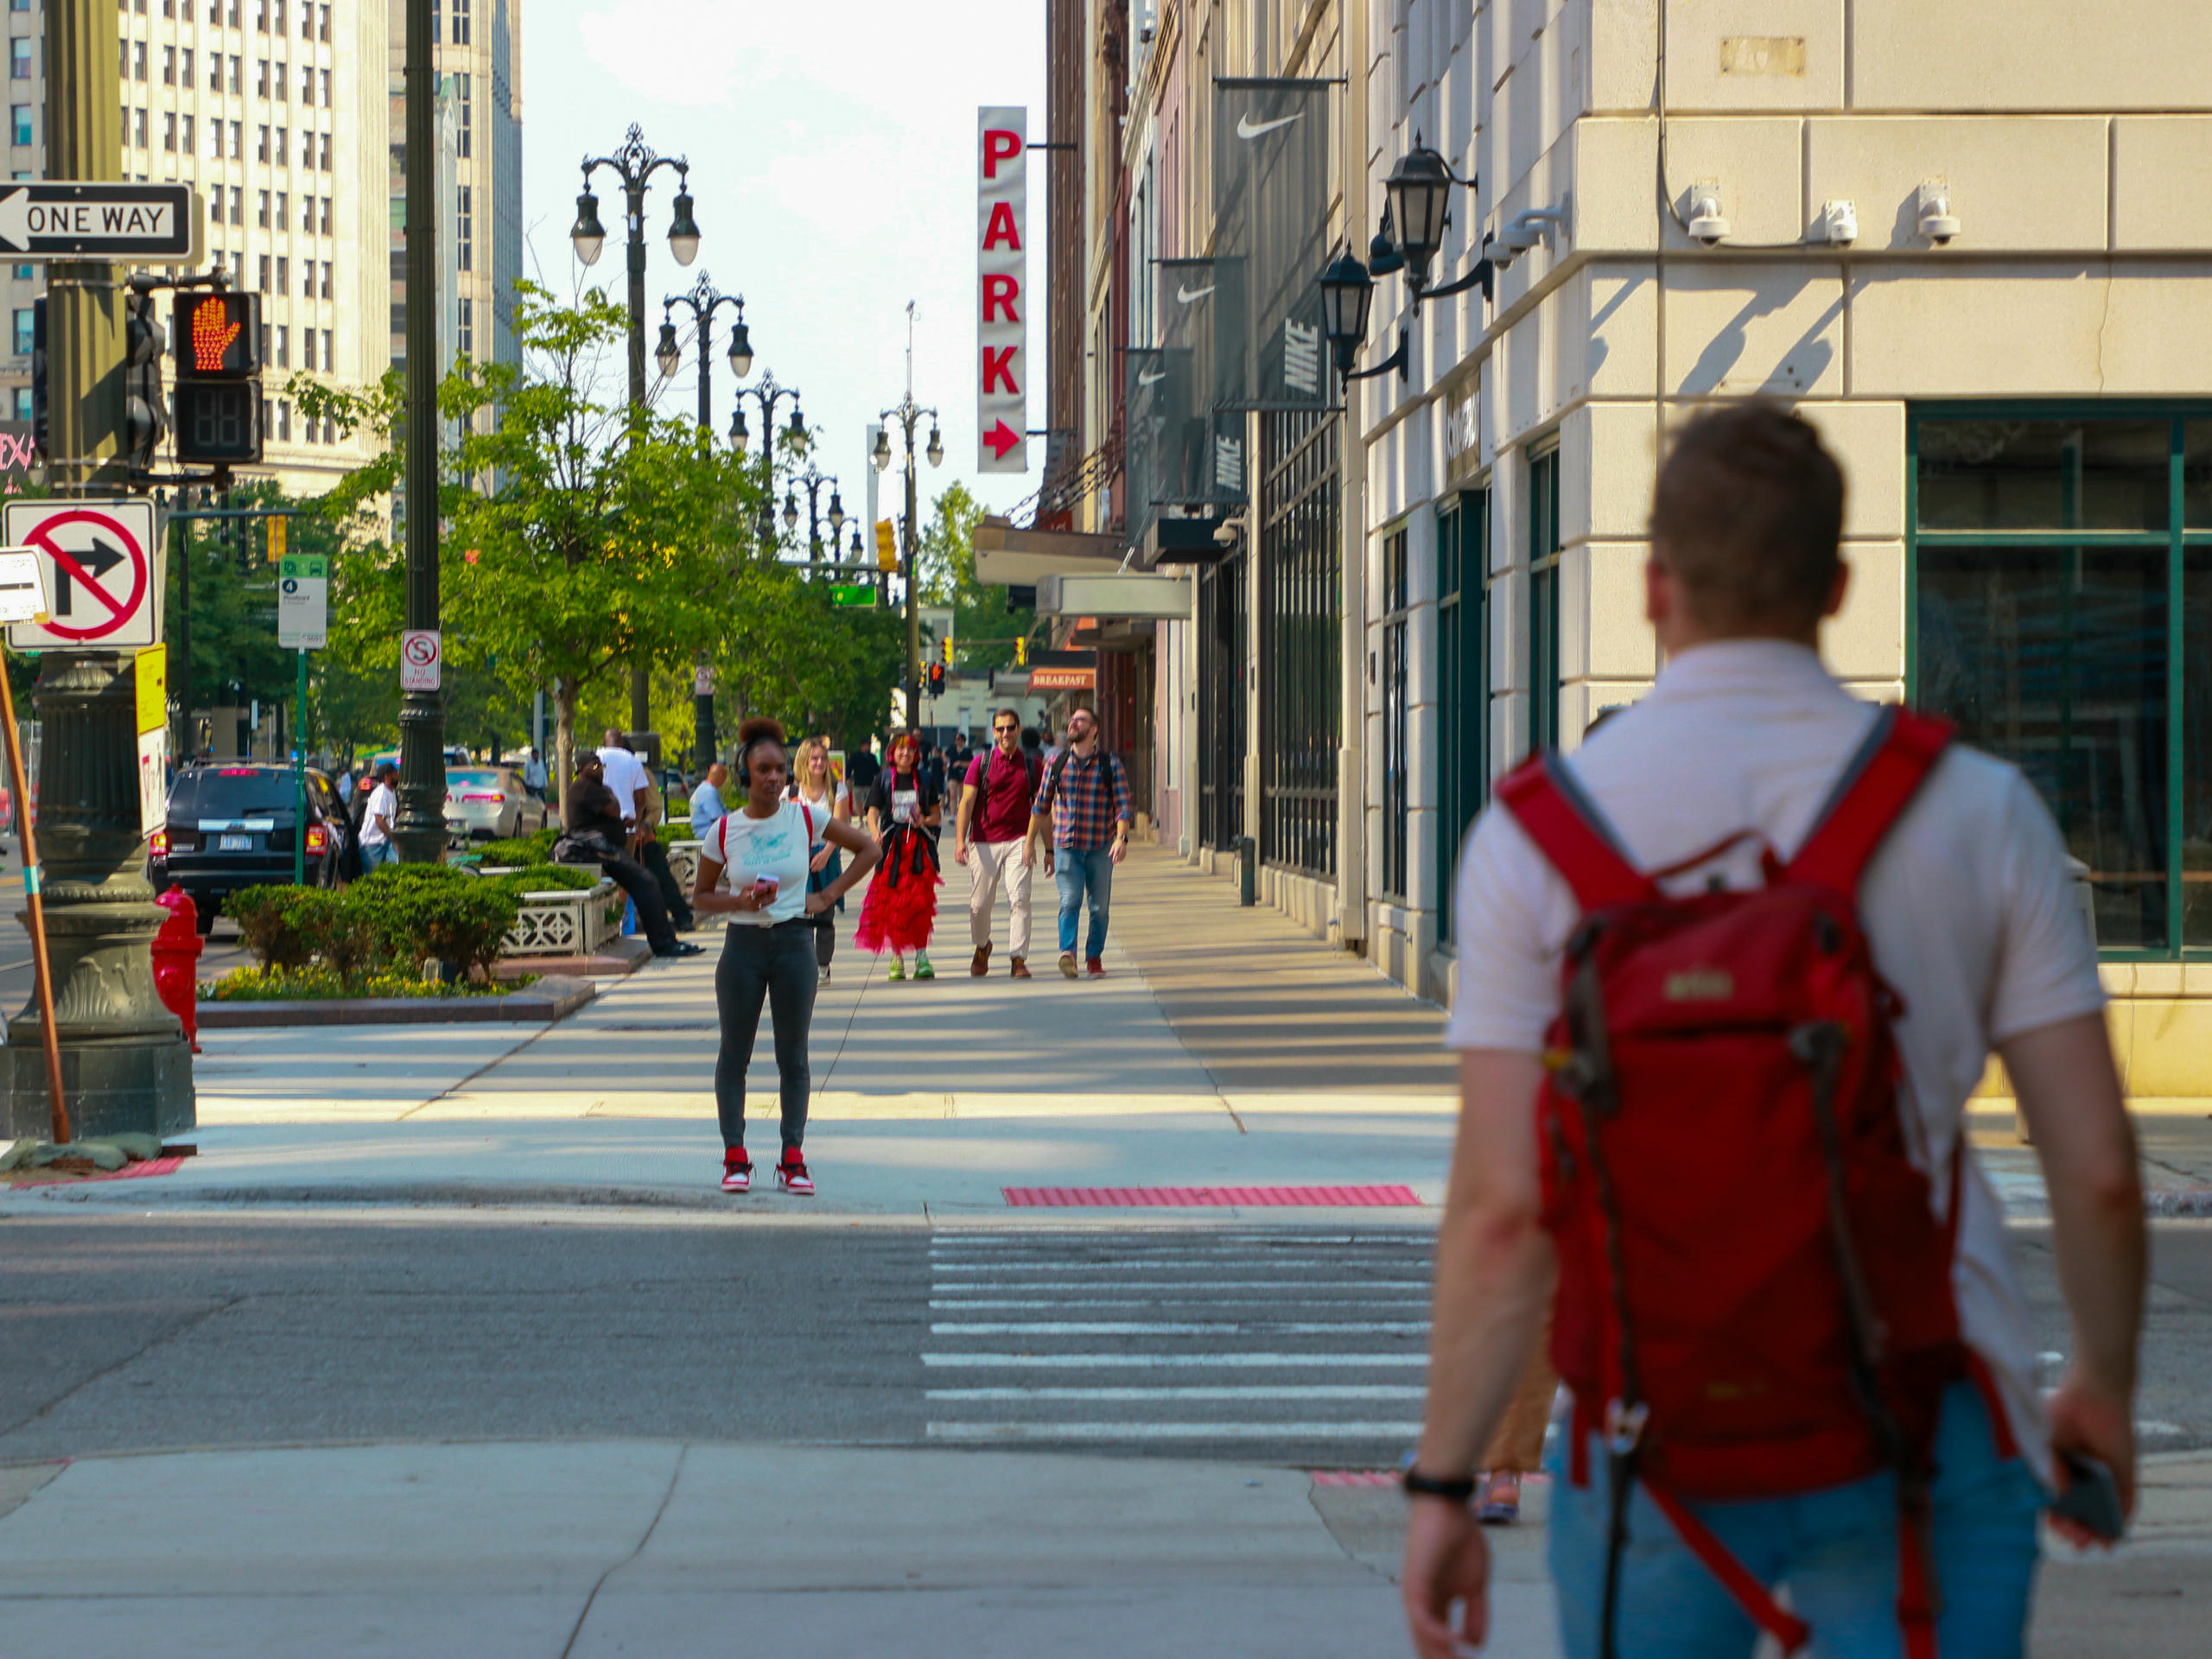 People walk on a sidewalk in a city.